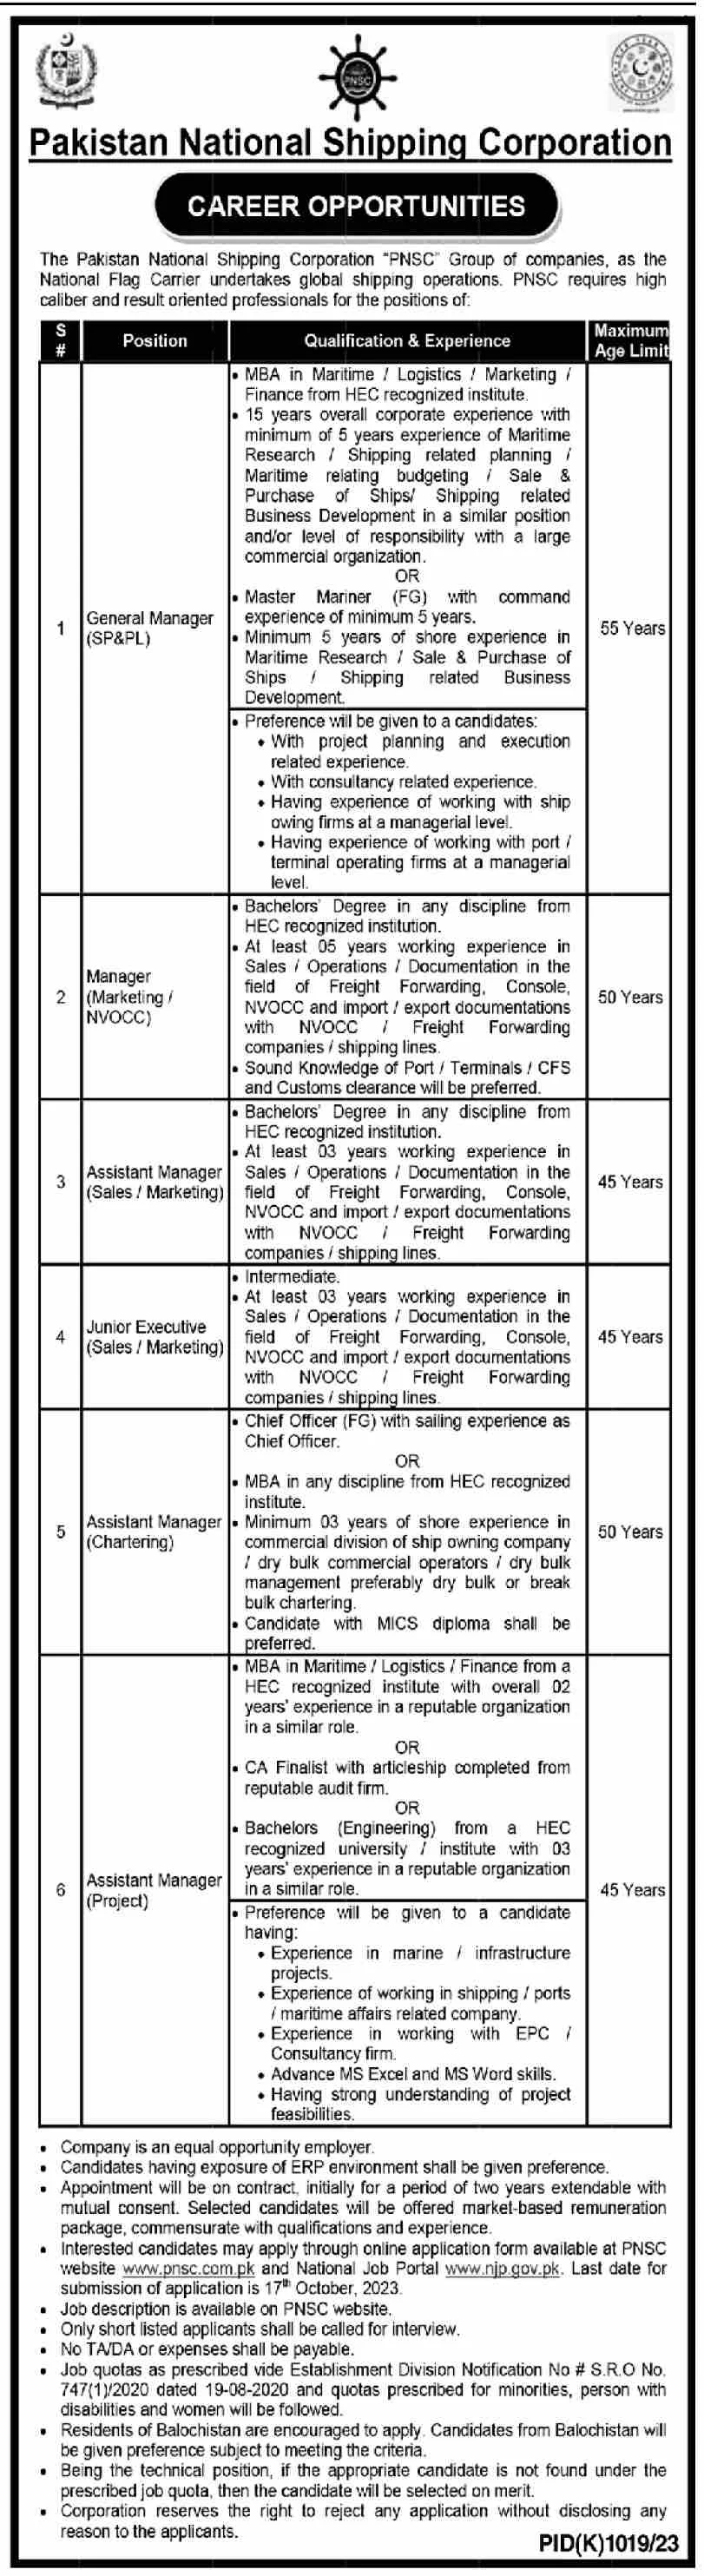 Pakistan National Shipping Corporation Job Vacancies 2023 | PNS Jobs 2023 |  Government jobs